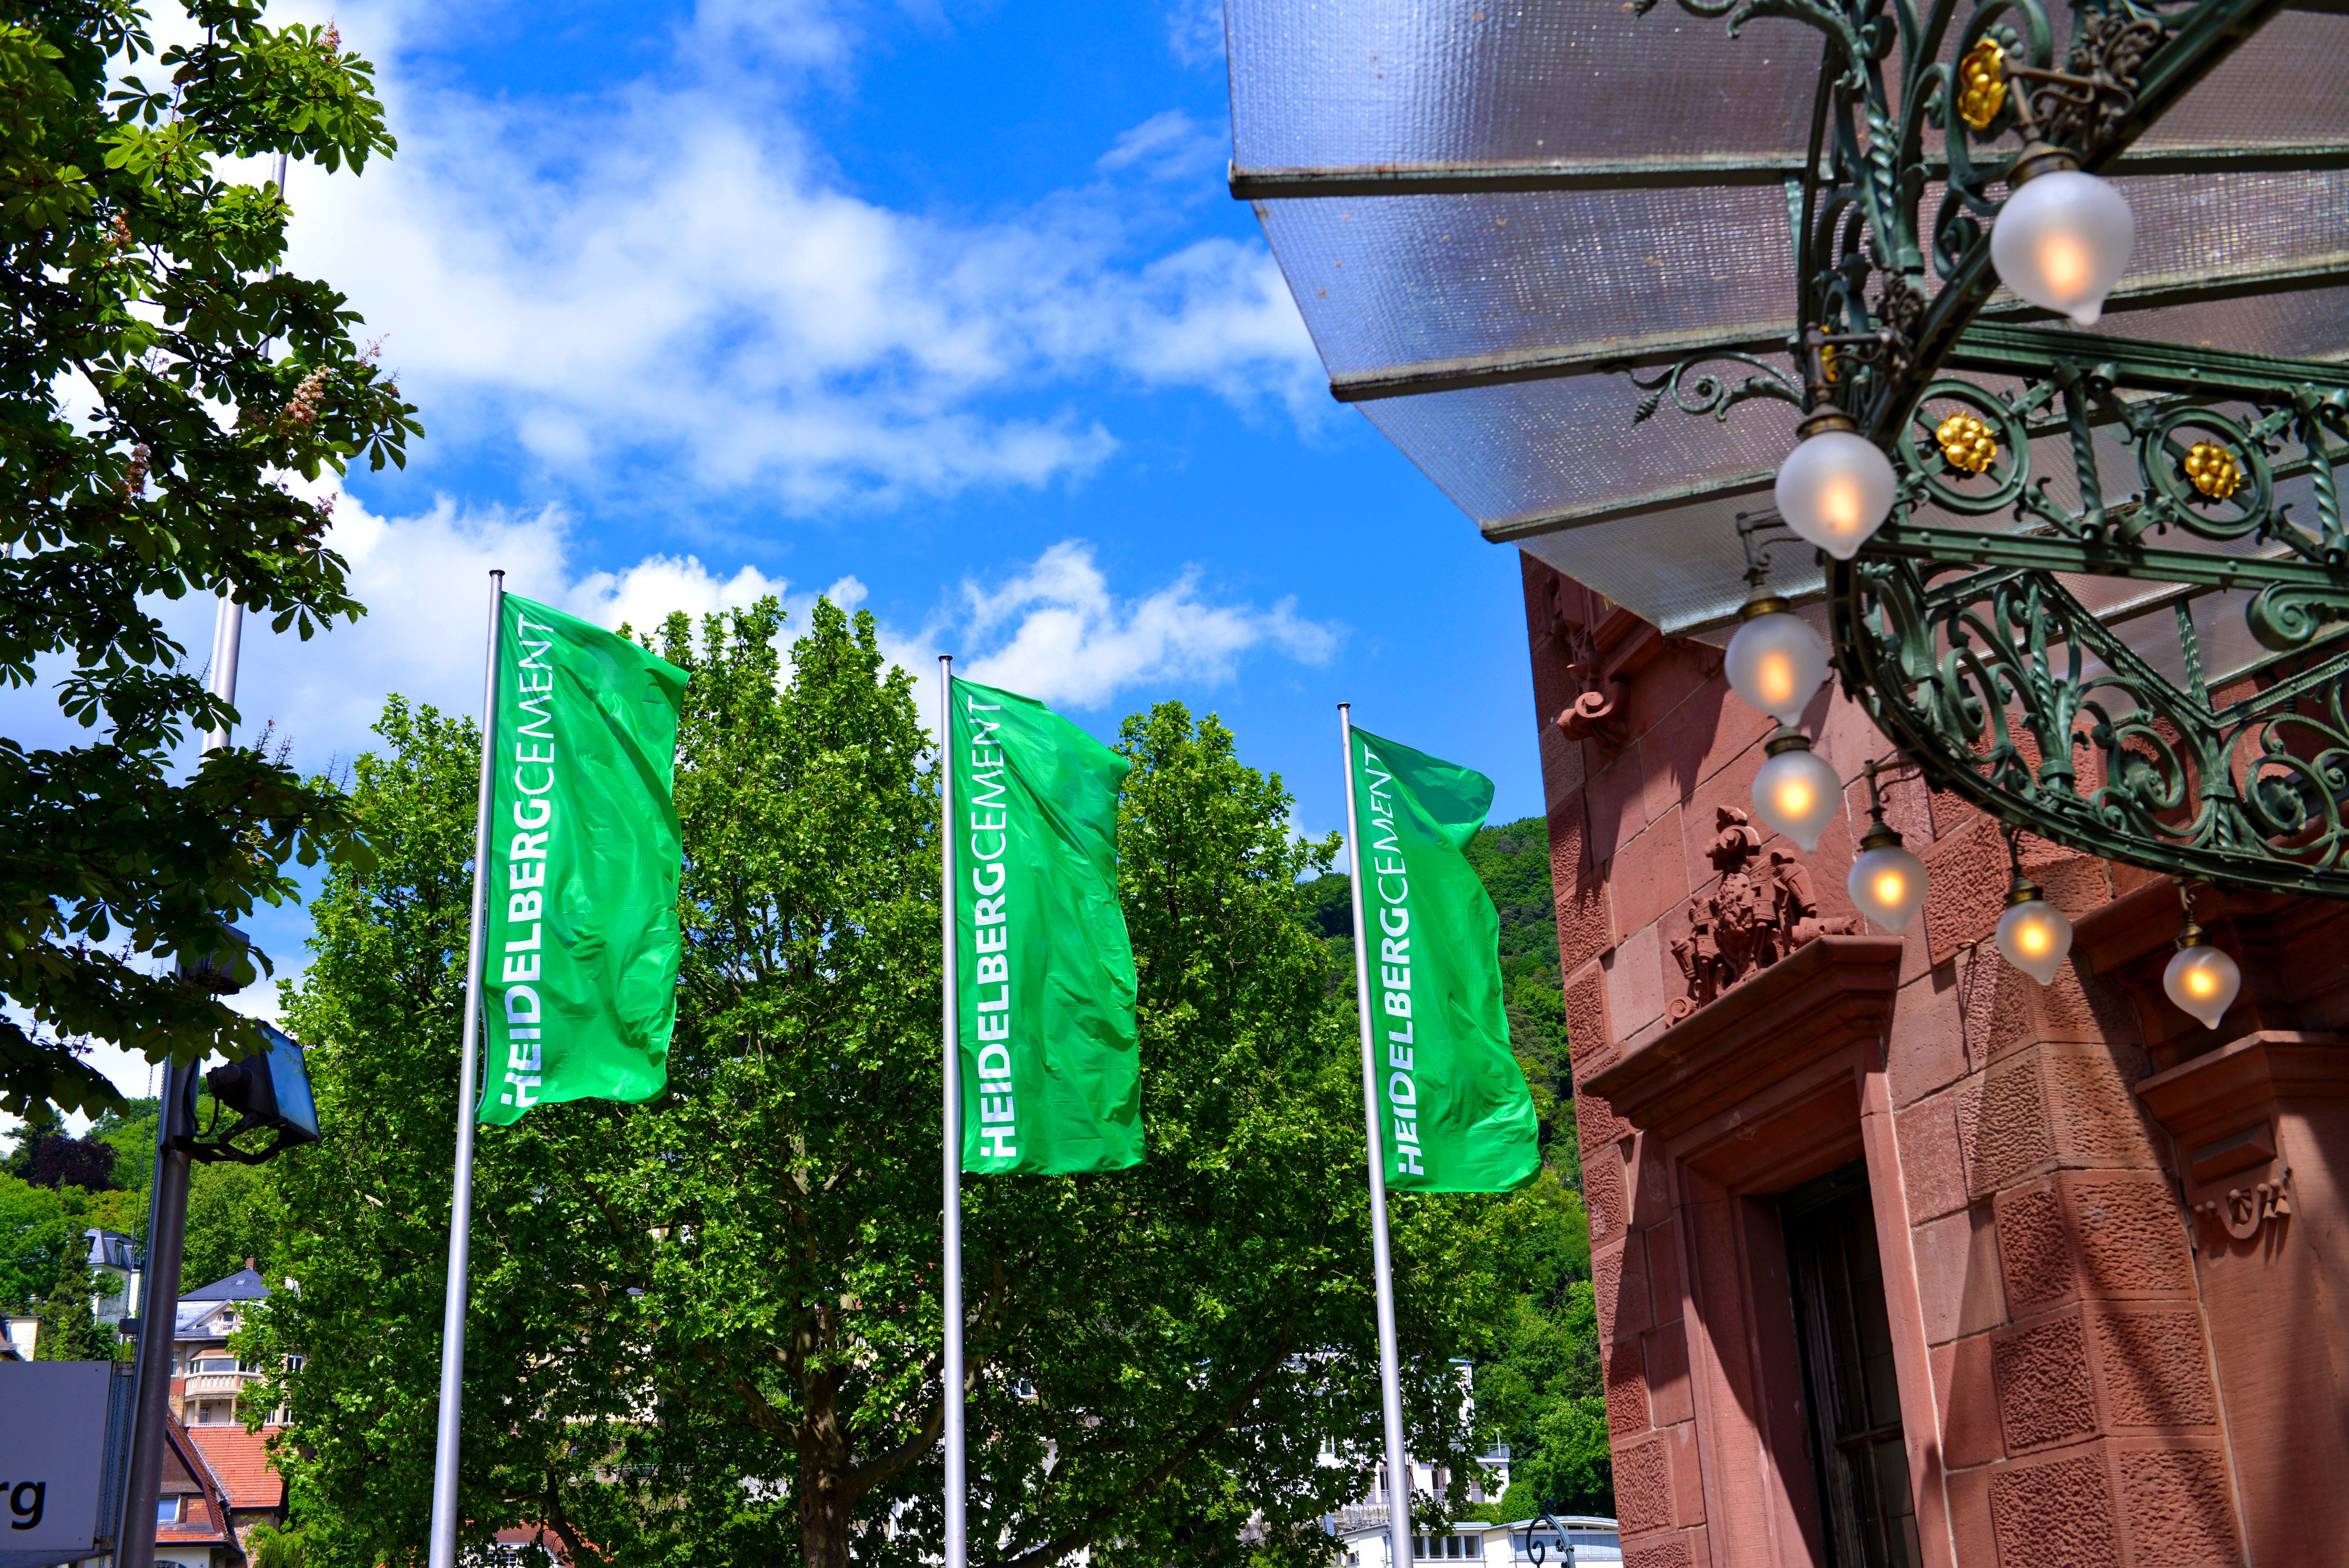 Drei grüne Flaggen mit HeidelbergCement-Beschriftung neben einer Hausfassade aus Sandstein, vor grünen Bäumen